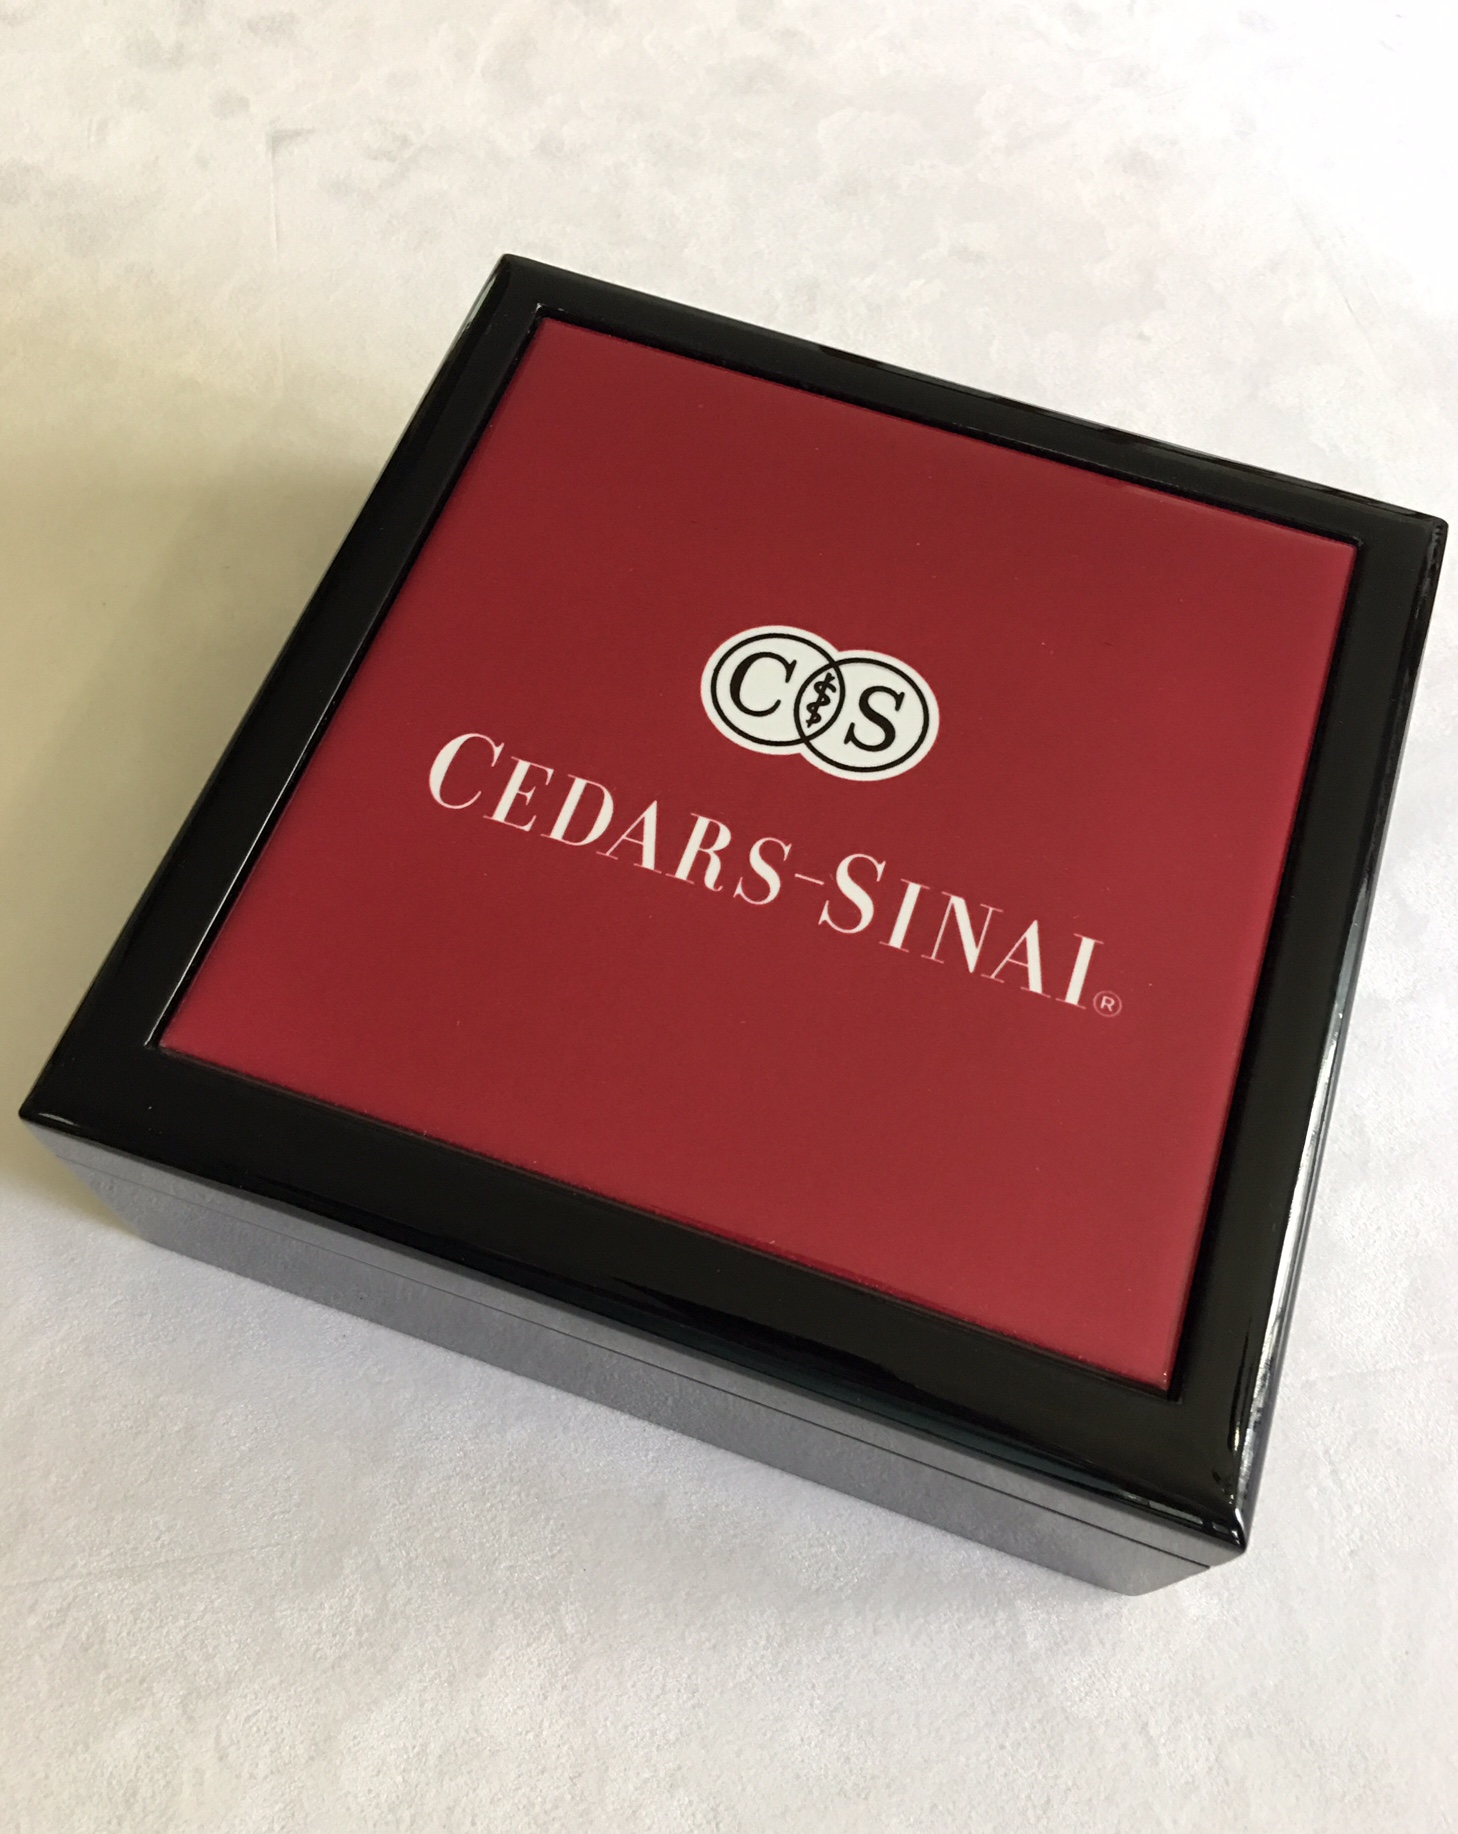 Cedar-Sinai Donor Keepsake Box made with sublimation printing